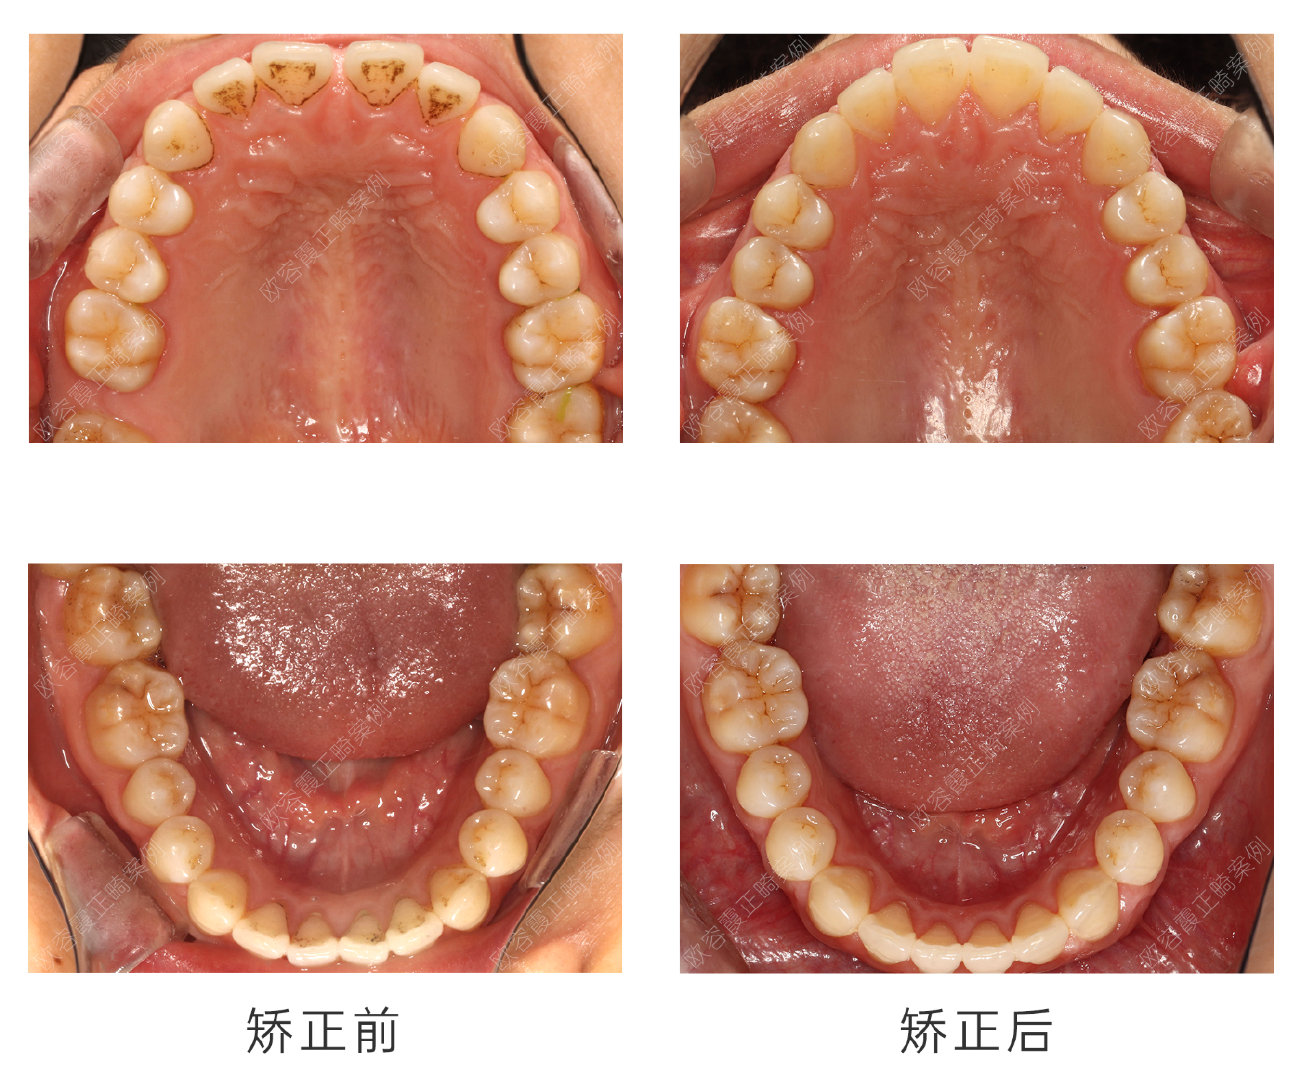 口内检查: 1,17缺失,18近中倾斜,上前牙区多个散在间隙总约3mm,下前